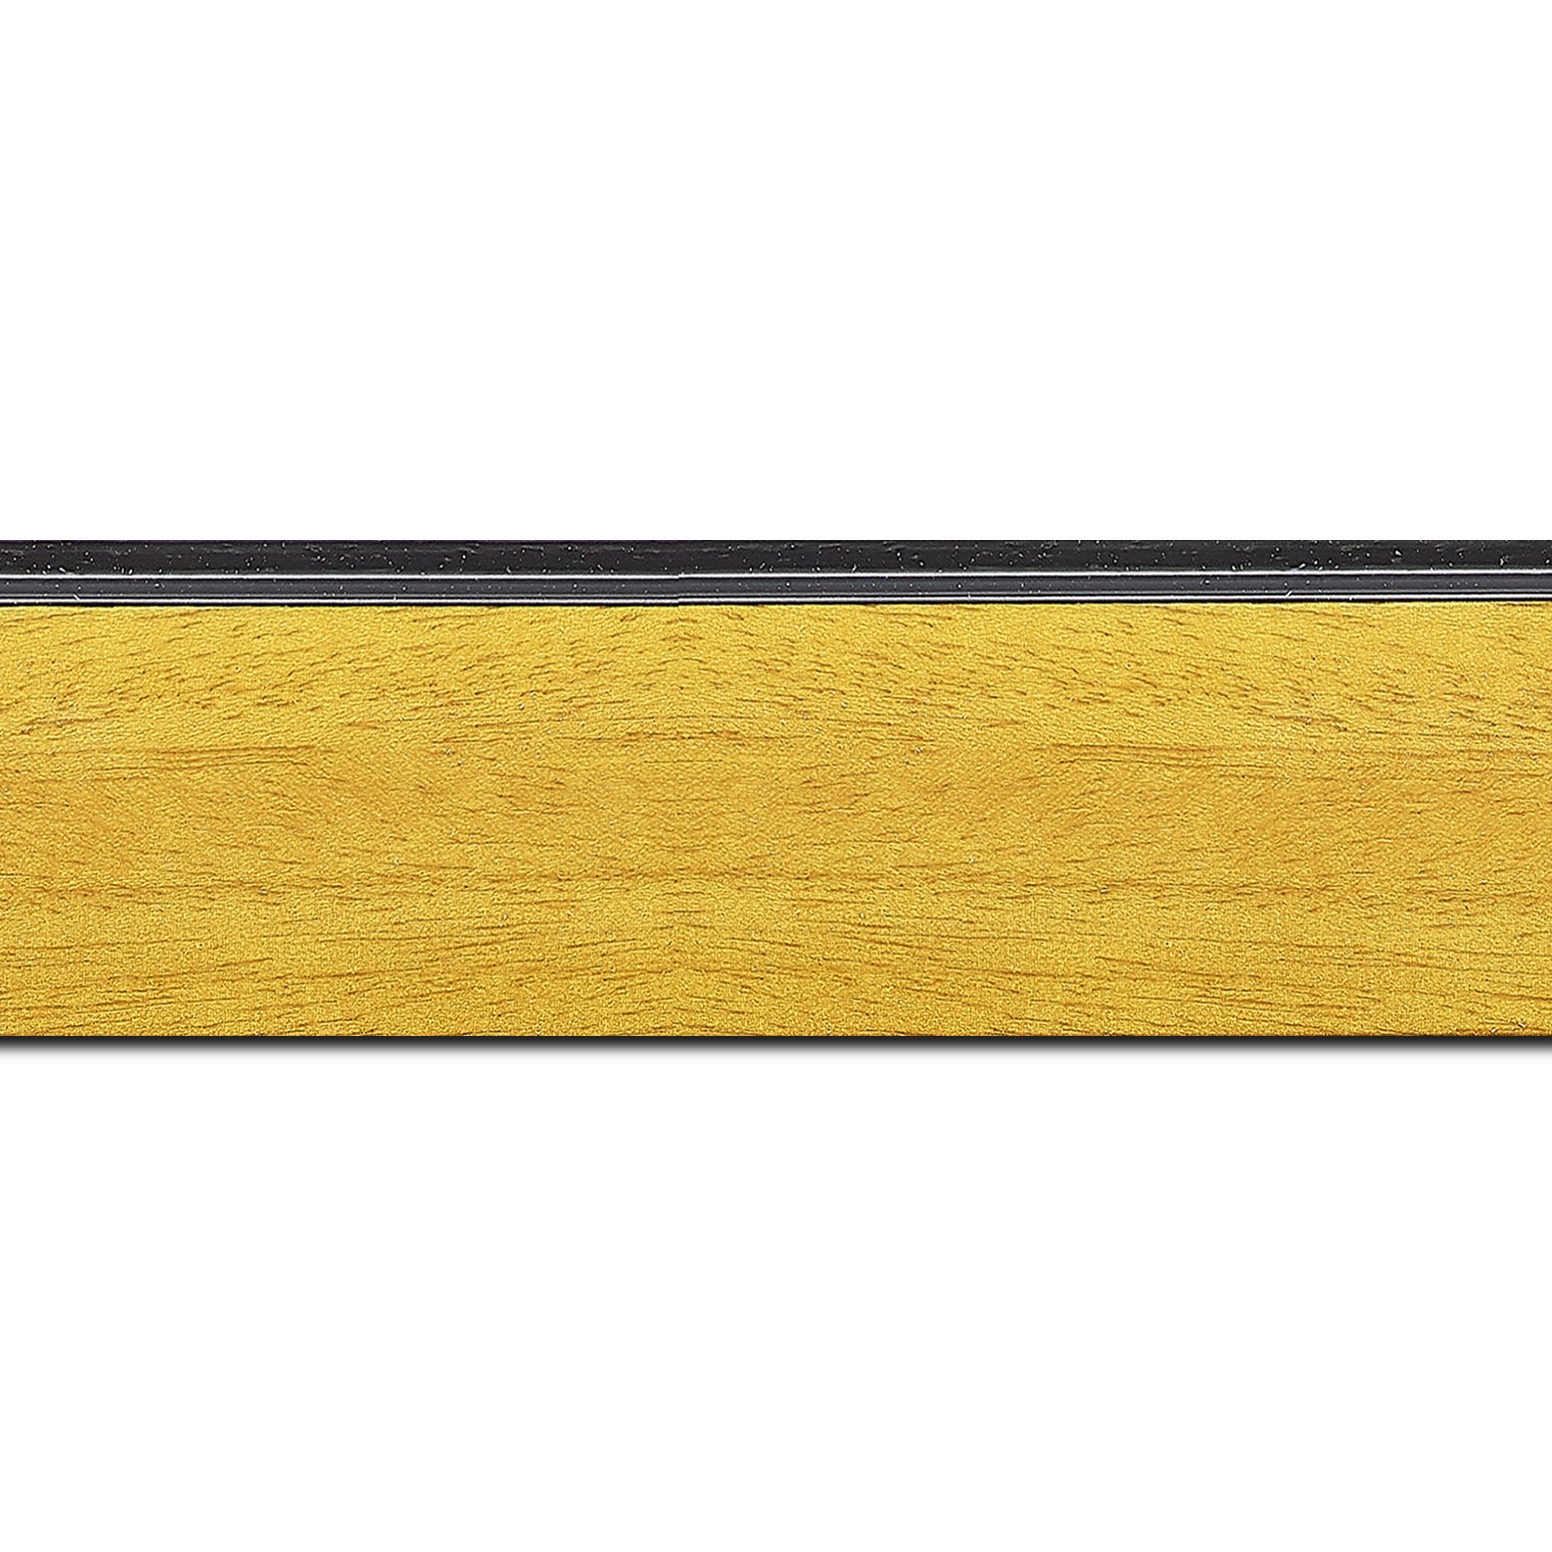 Baguette longueur 1.40m bois profil en pente méplat largeur 4.8cm couleur jaune tournesol satiné surligné par une gorge extérieure noire : originalité et élégance assurée